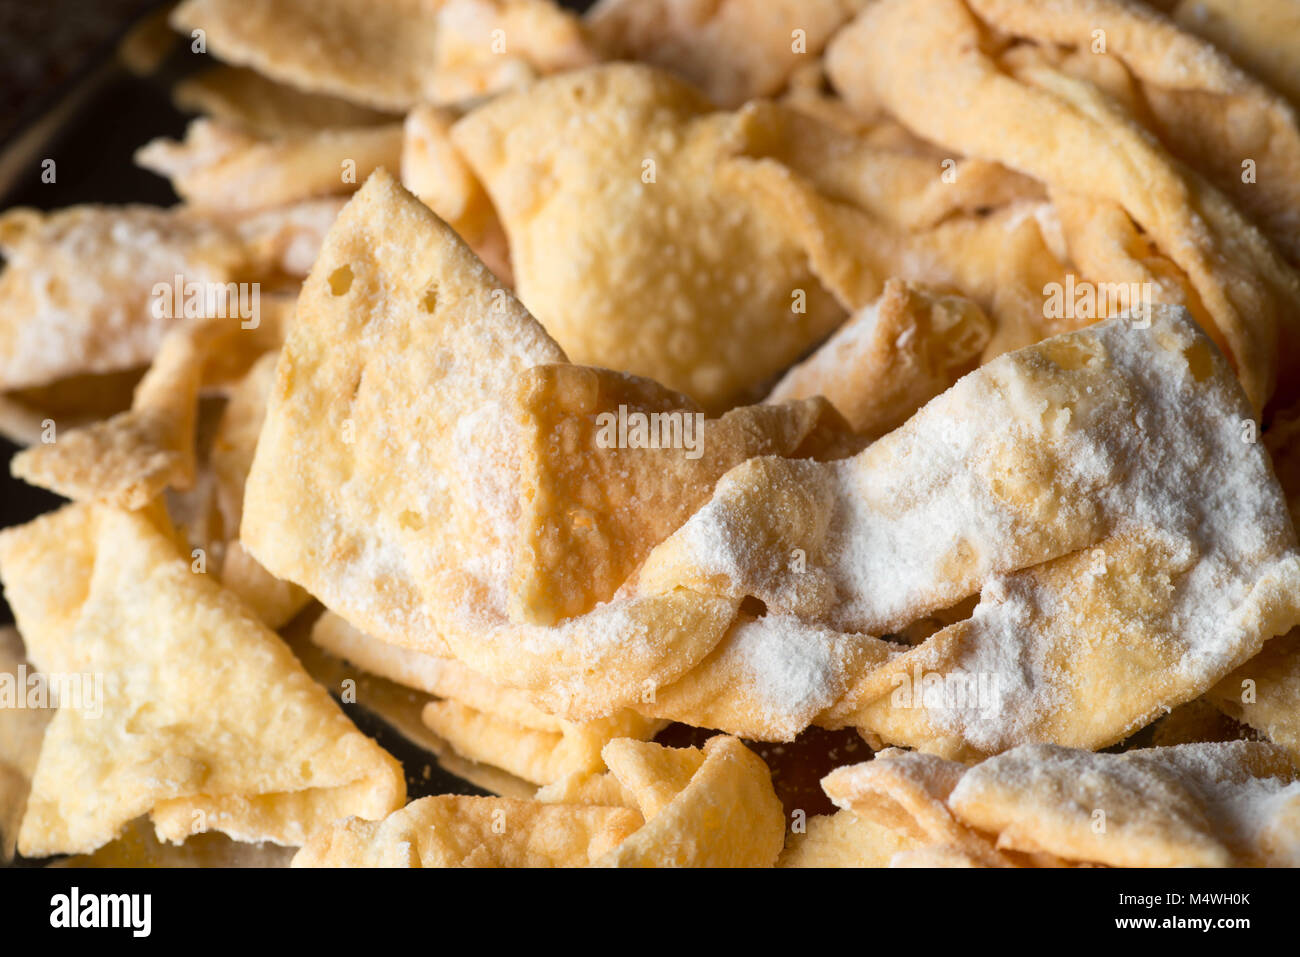 Faworki, ali d'angelo, fritte nastri di pasta sulla piastra Foto Stock